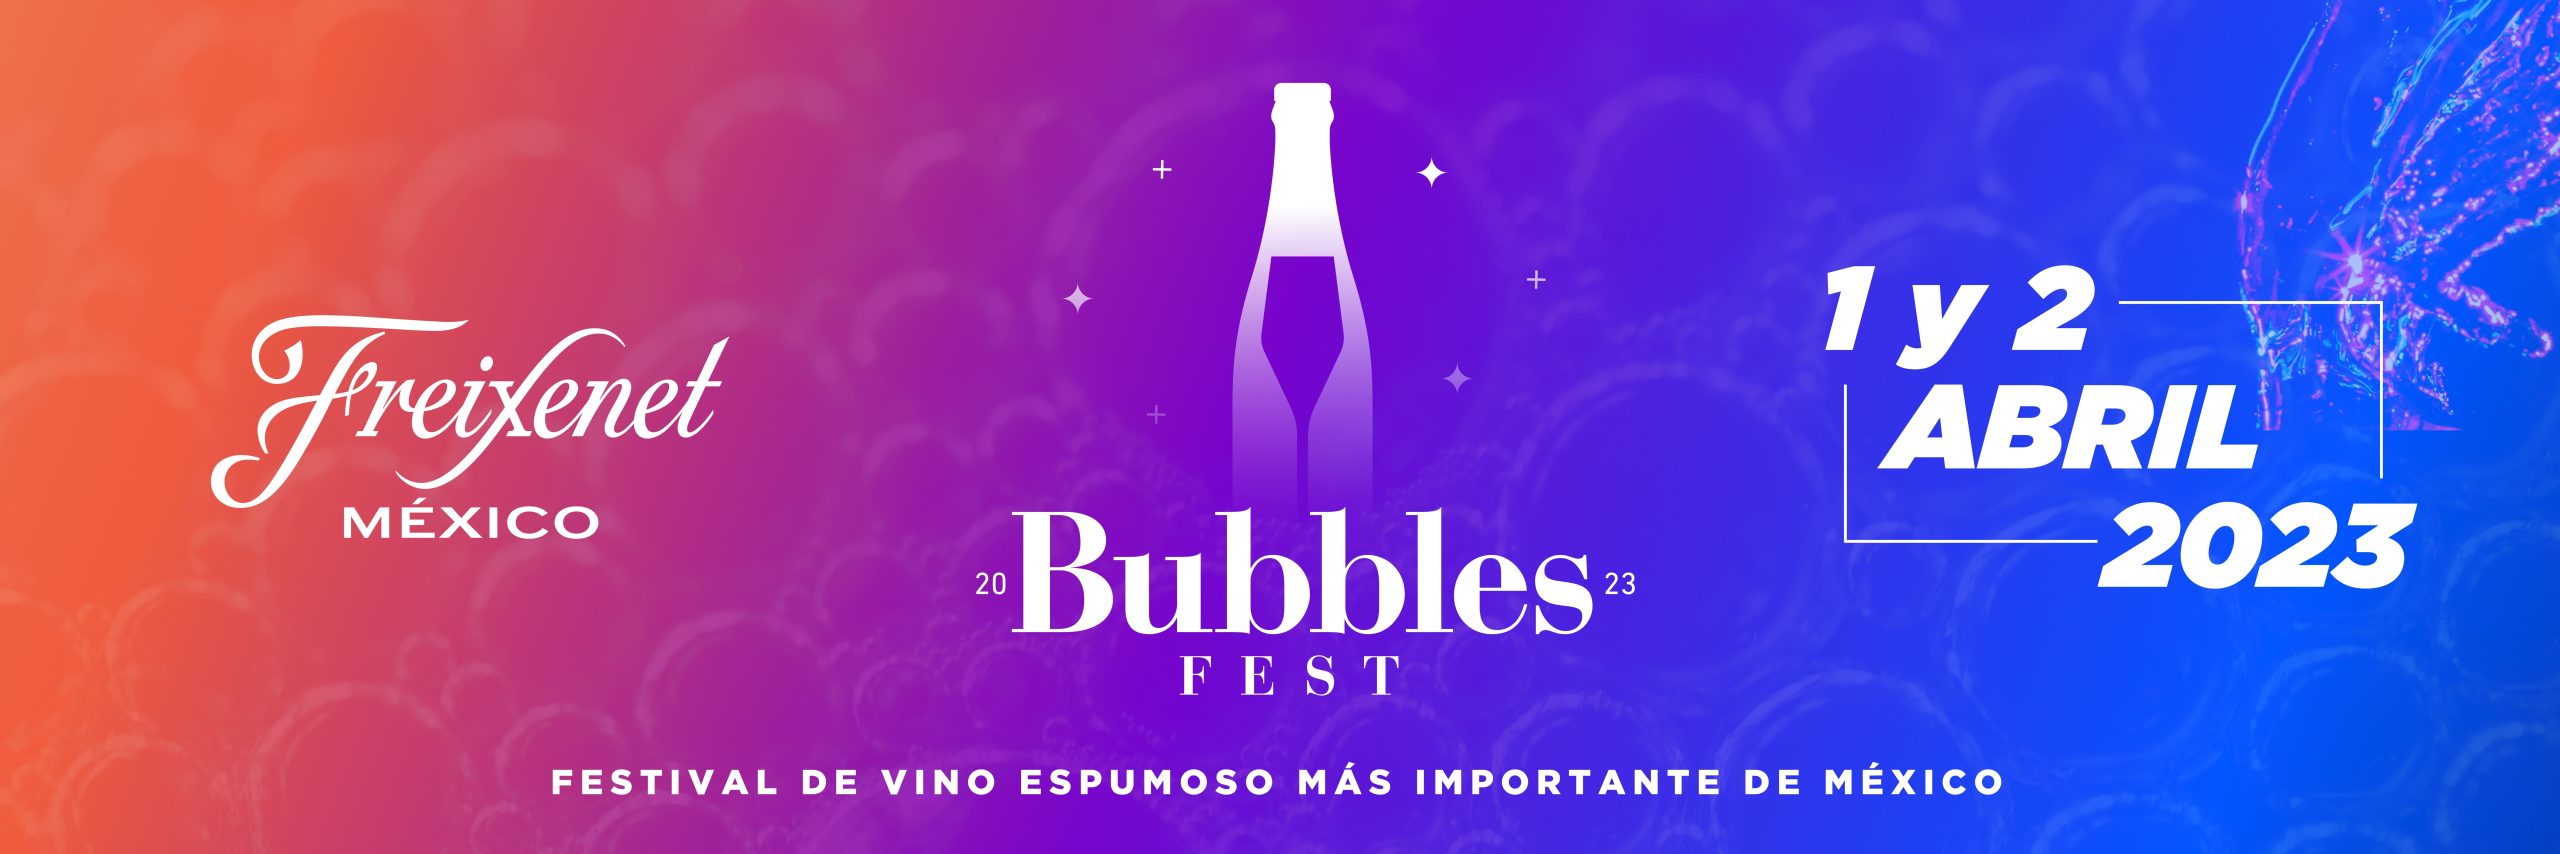 Bubbles Fest